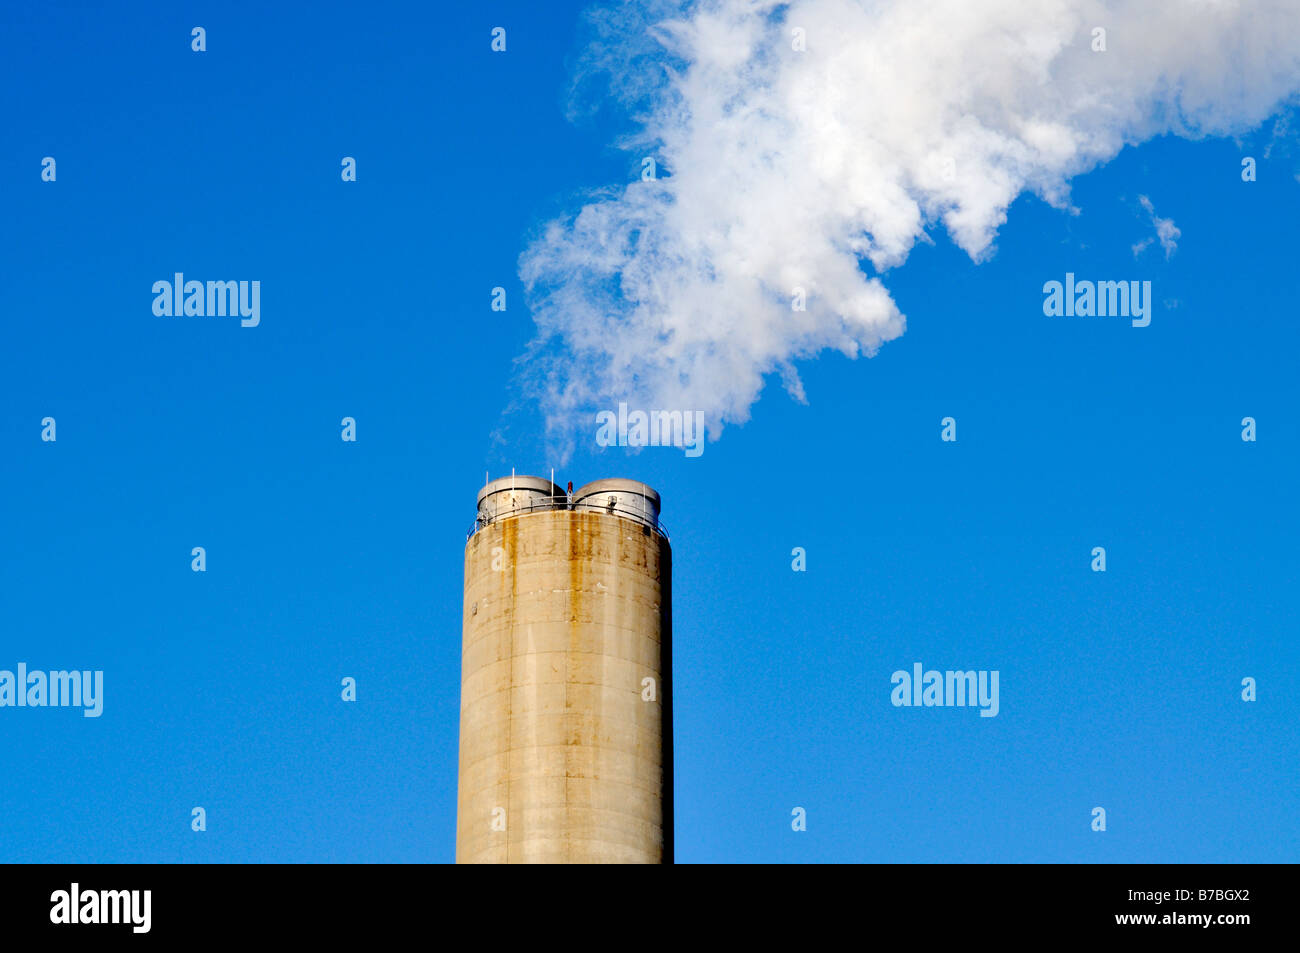 La cheminée centrale avec l'échappement ou fumée blanche dans United States against blue sky Banque D'Images